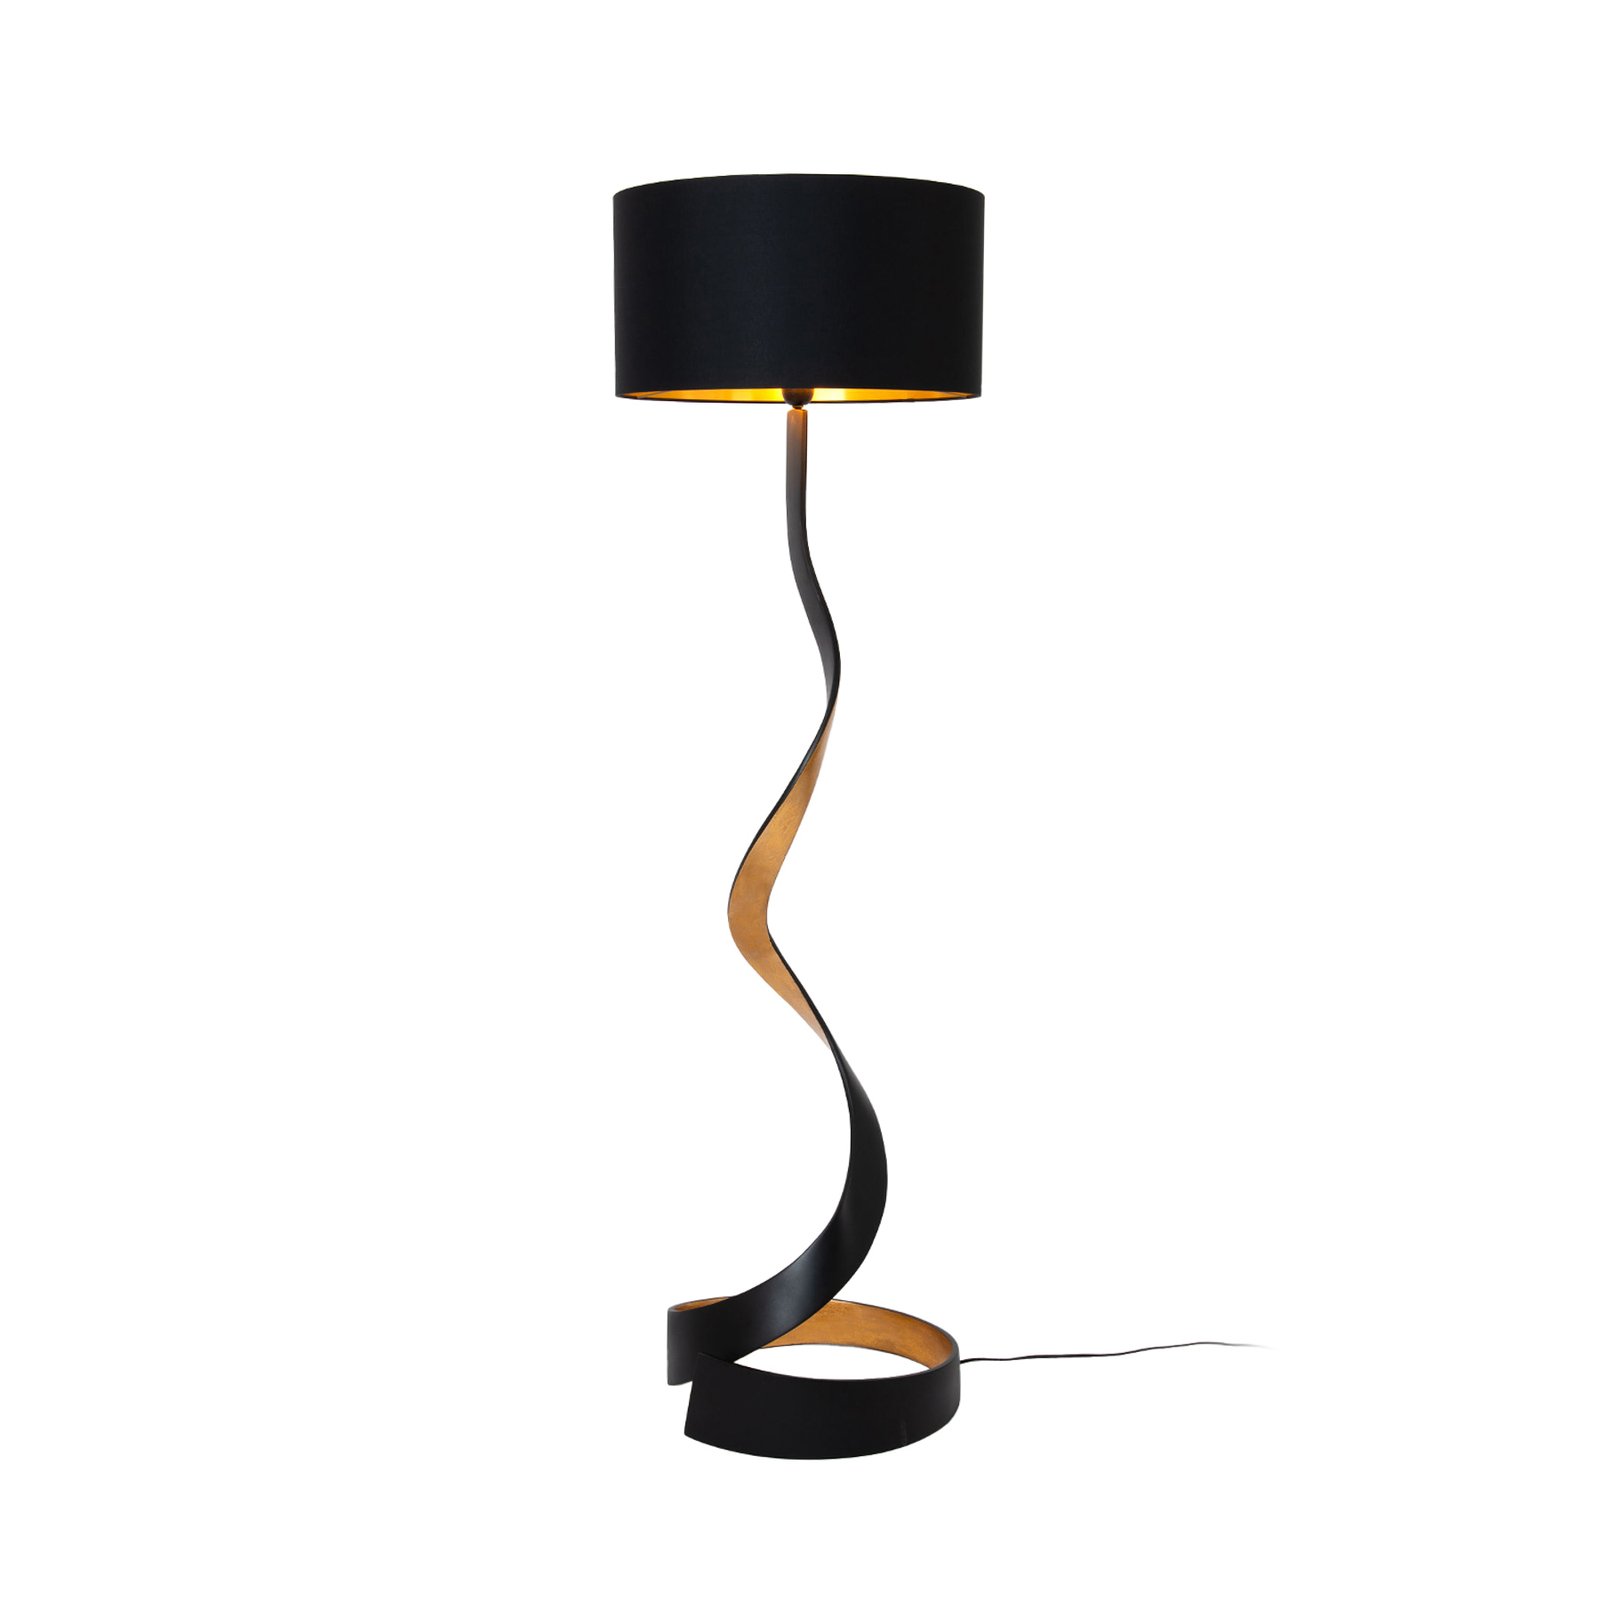 Stojací lampa Vortice, černá/zlatá, výška 157 cm, železo